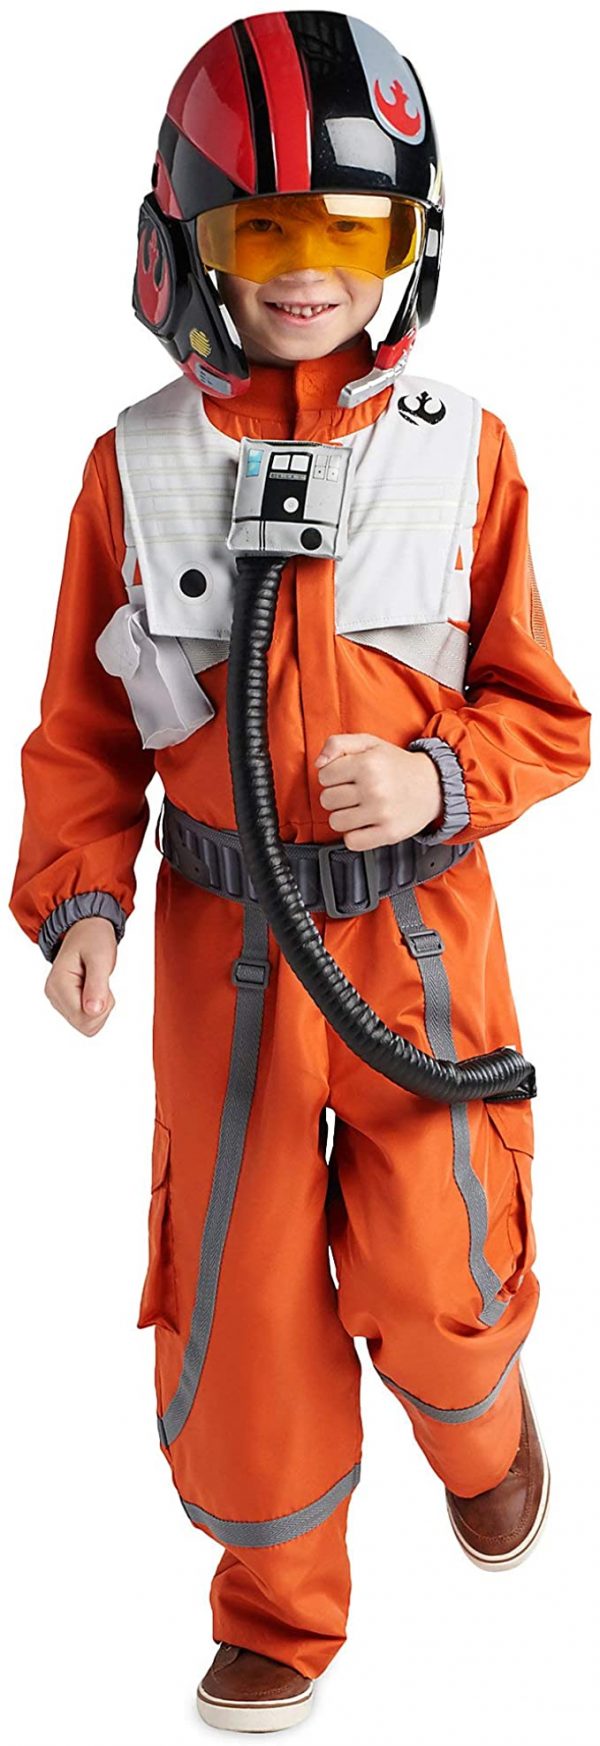 Fantasia de Poe Dameron de Star Wars para meninos – Star Wars Poe Dameron Costume for Boys